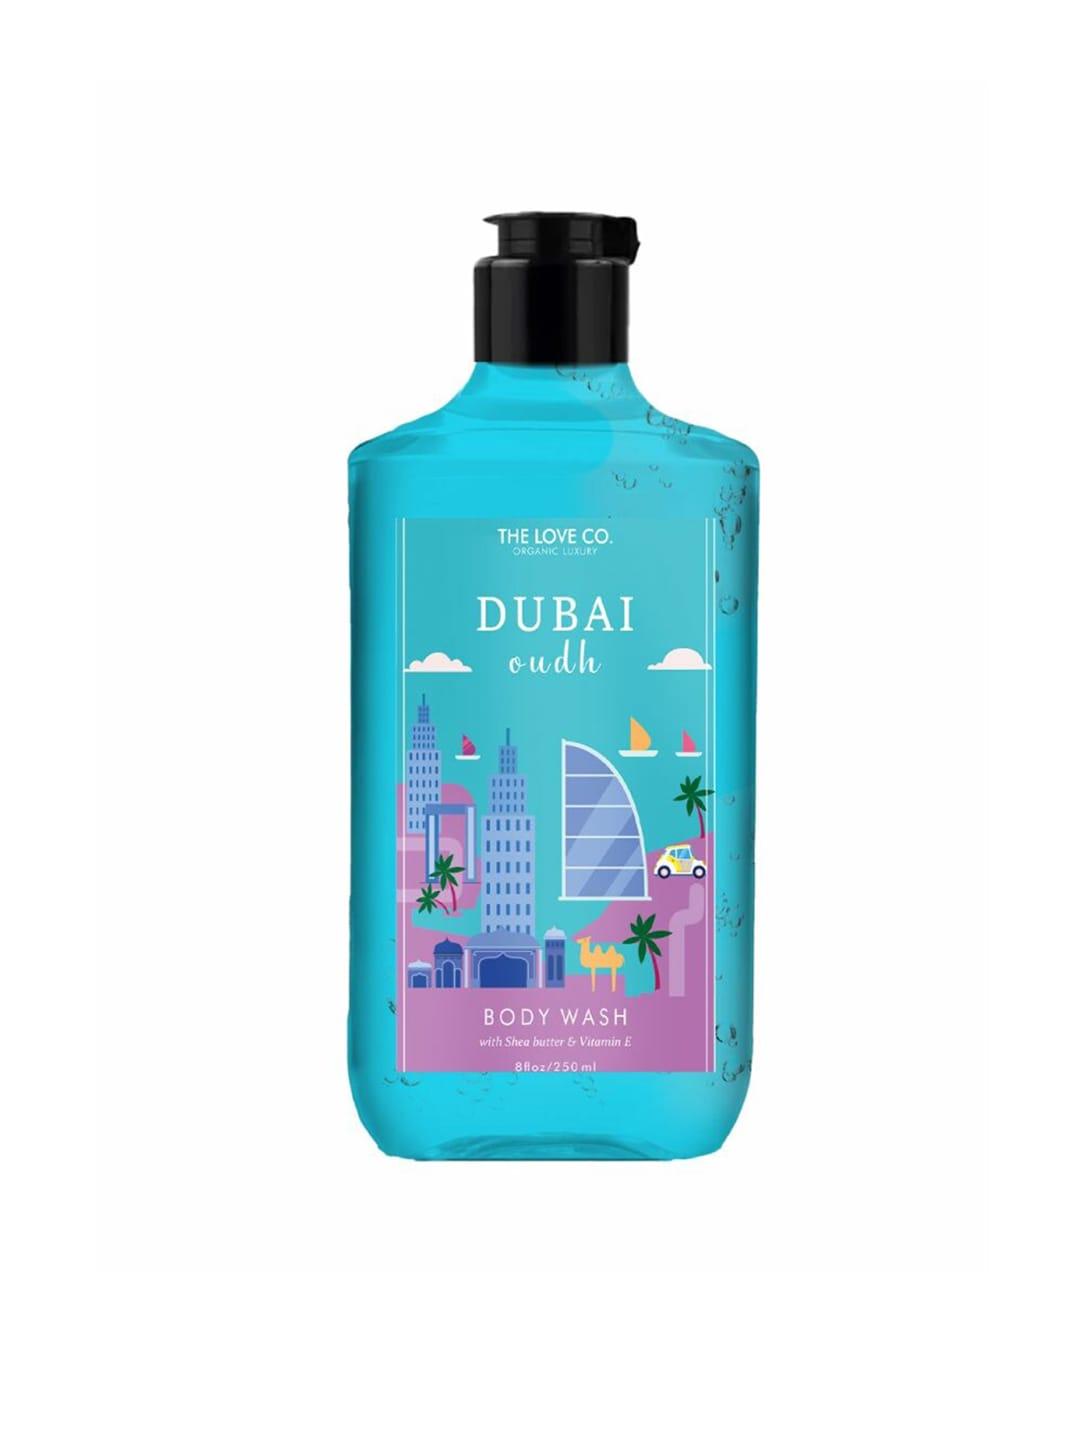 THE LOVE CO. Dubai Oudh Body Wash